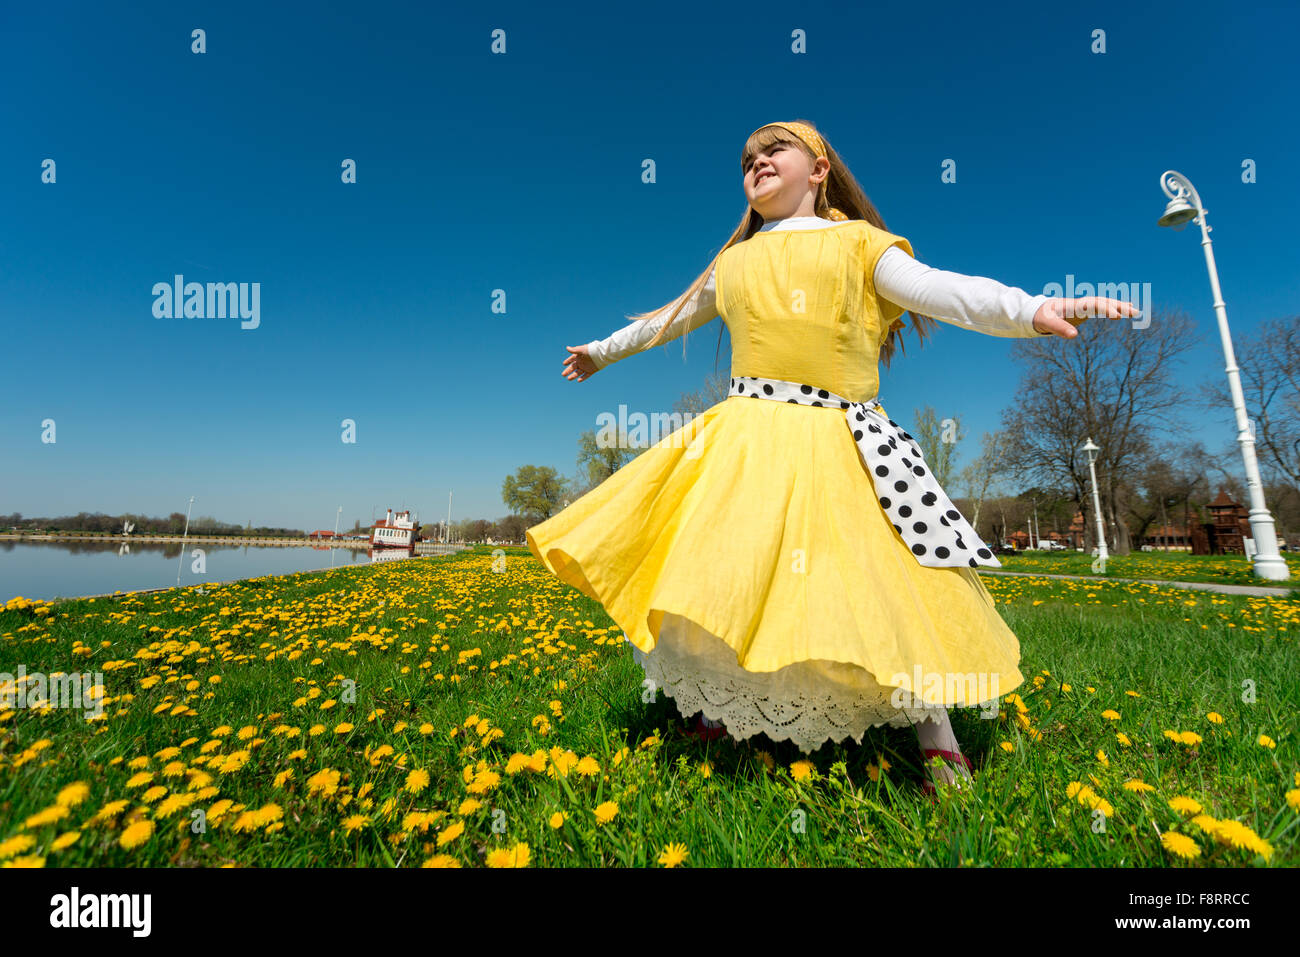 Petite fille jouant dans la nature, jouissant de la liberté tout en tournant sur son axe Banque D'Images